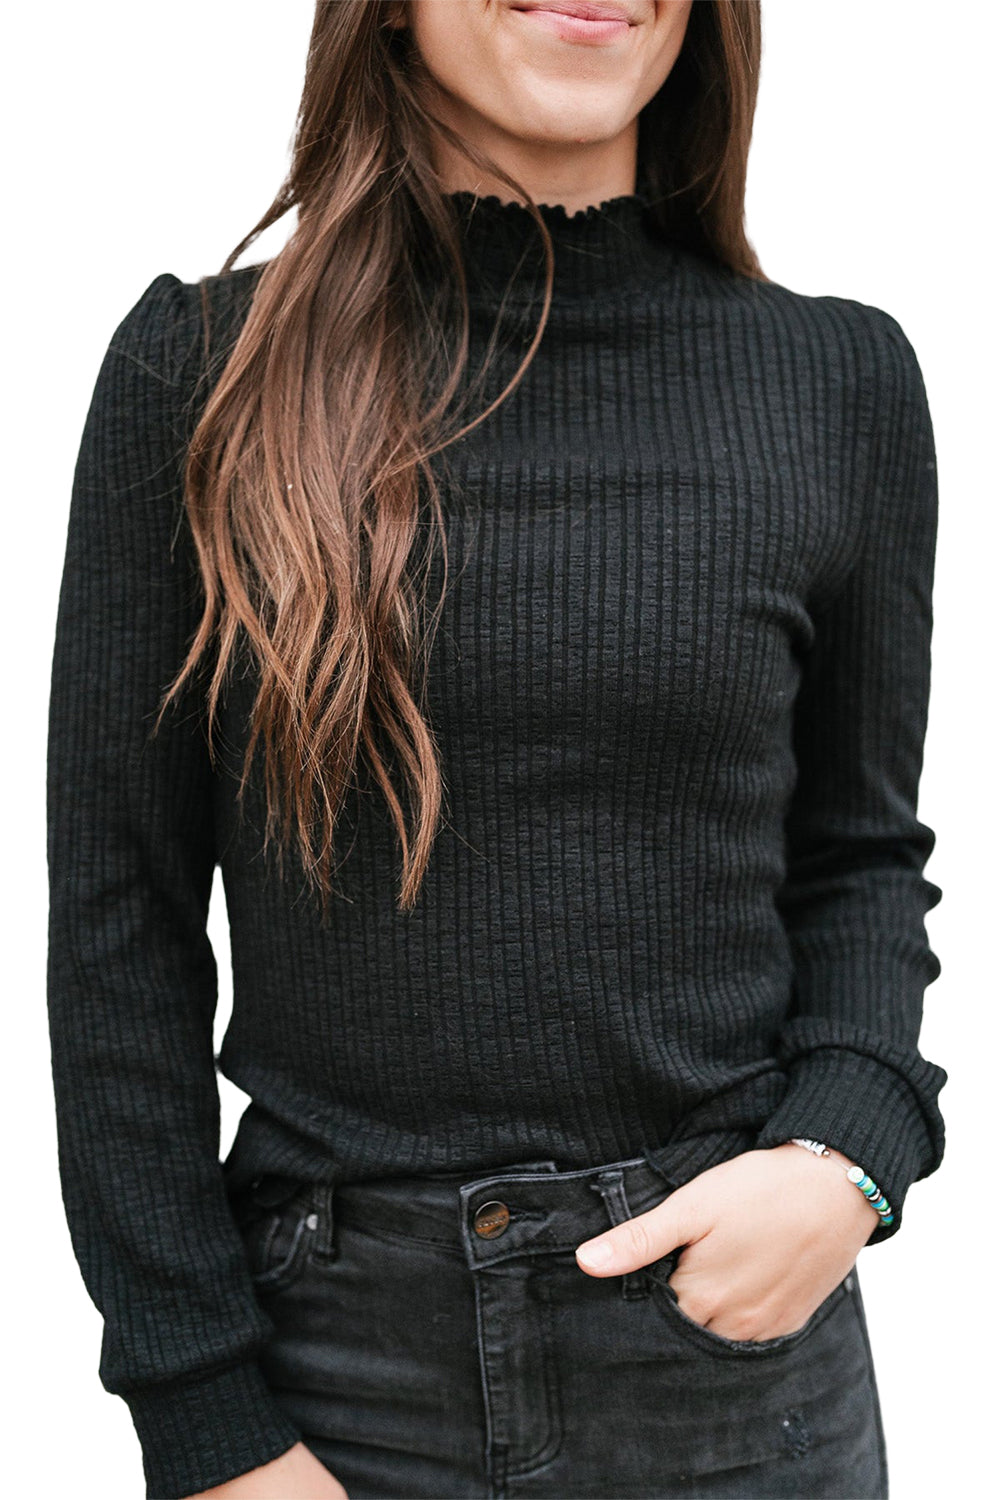 Crna jednobojna majica dugih rukava s visokim izrezom i naborima